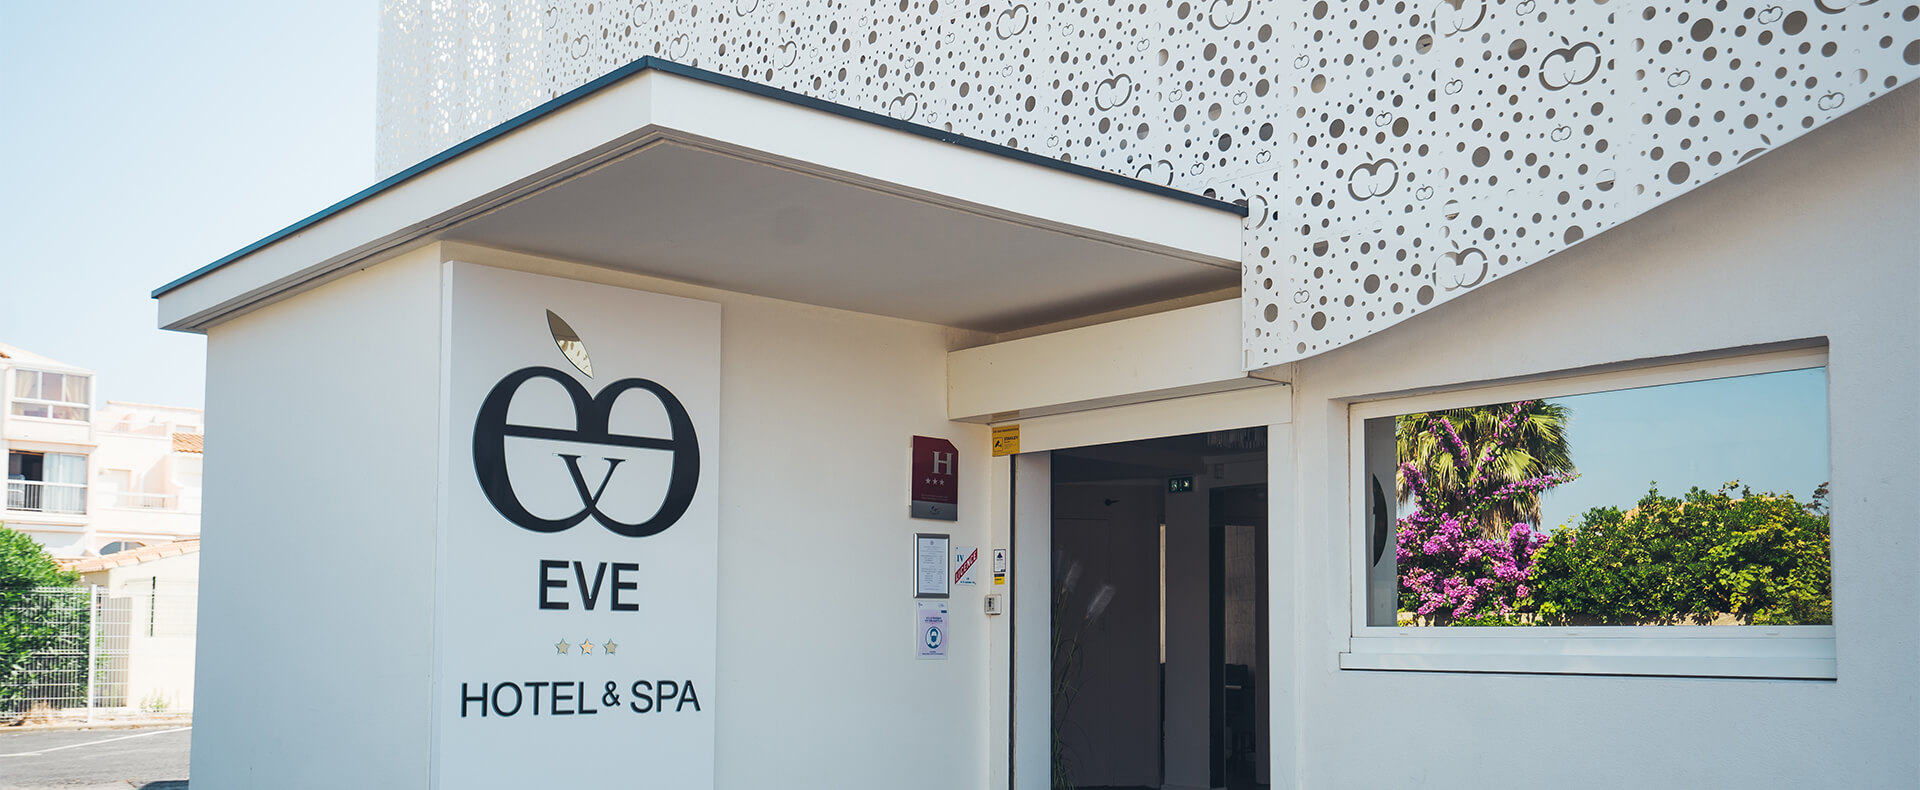 Hotel Eve, Naturist Hotel in Cap d'Agde